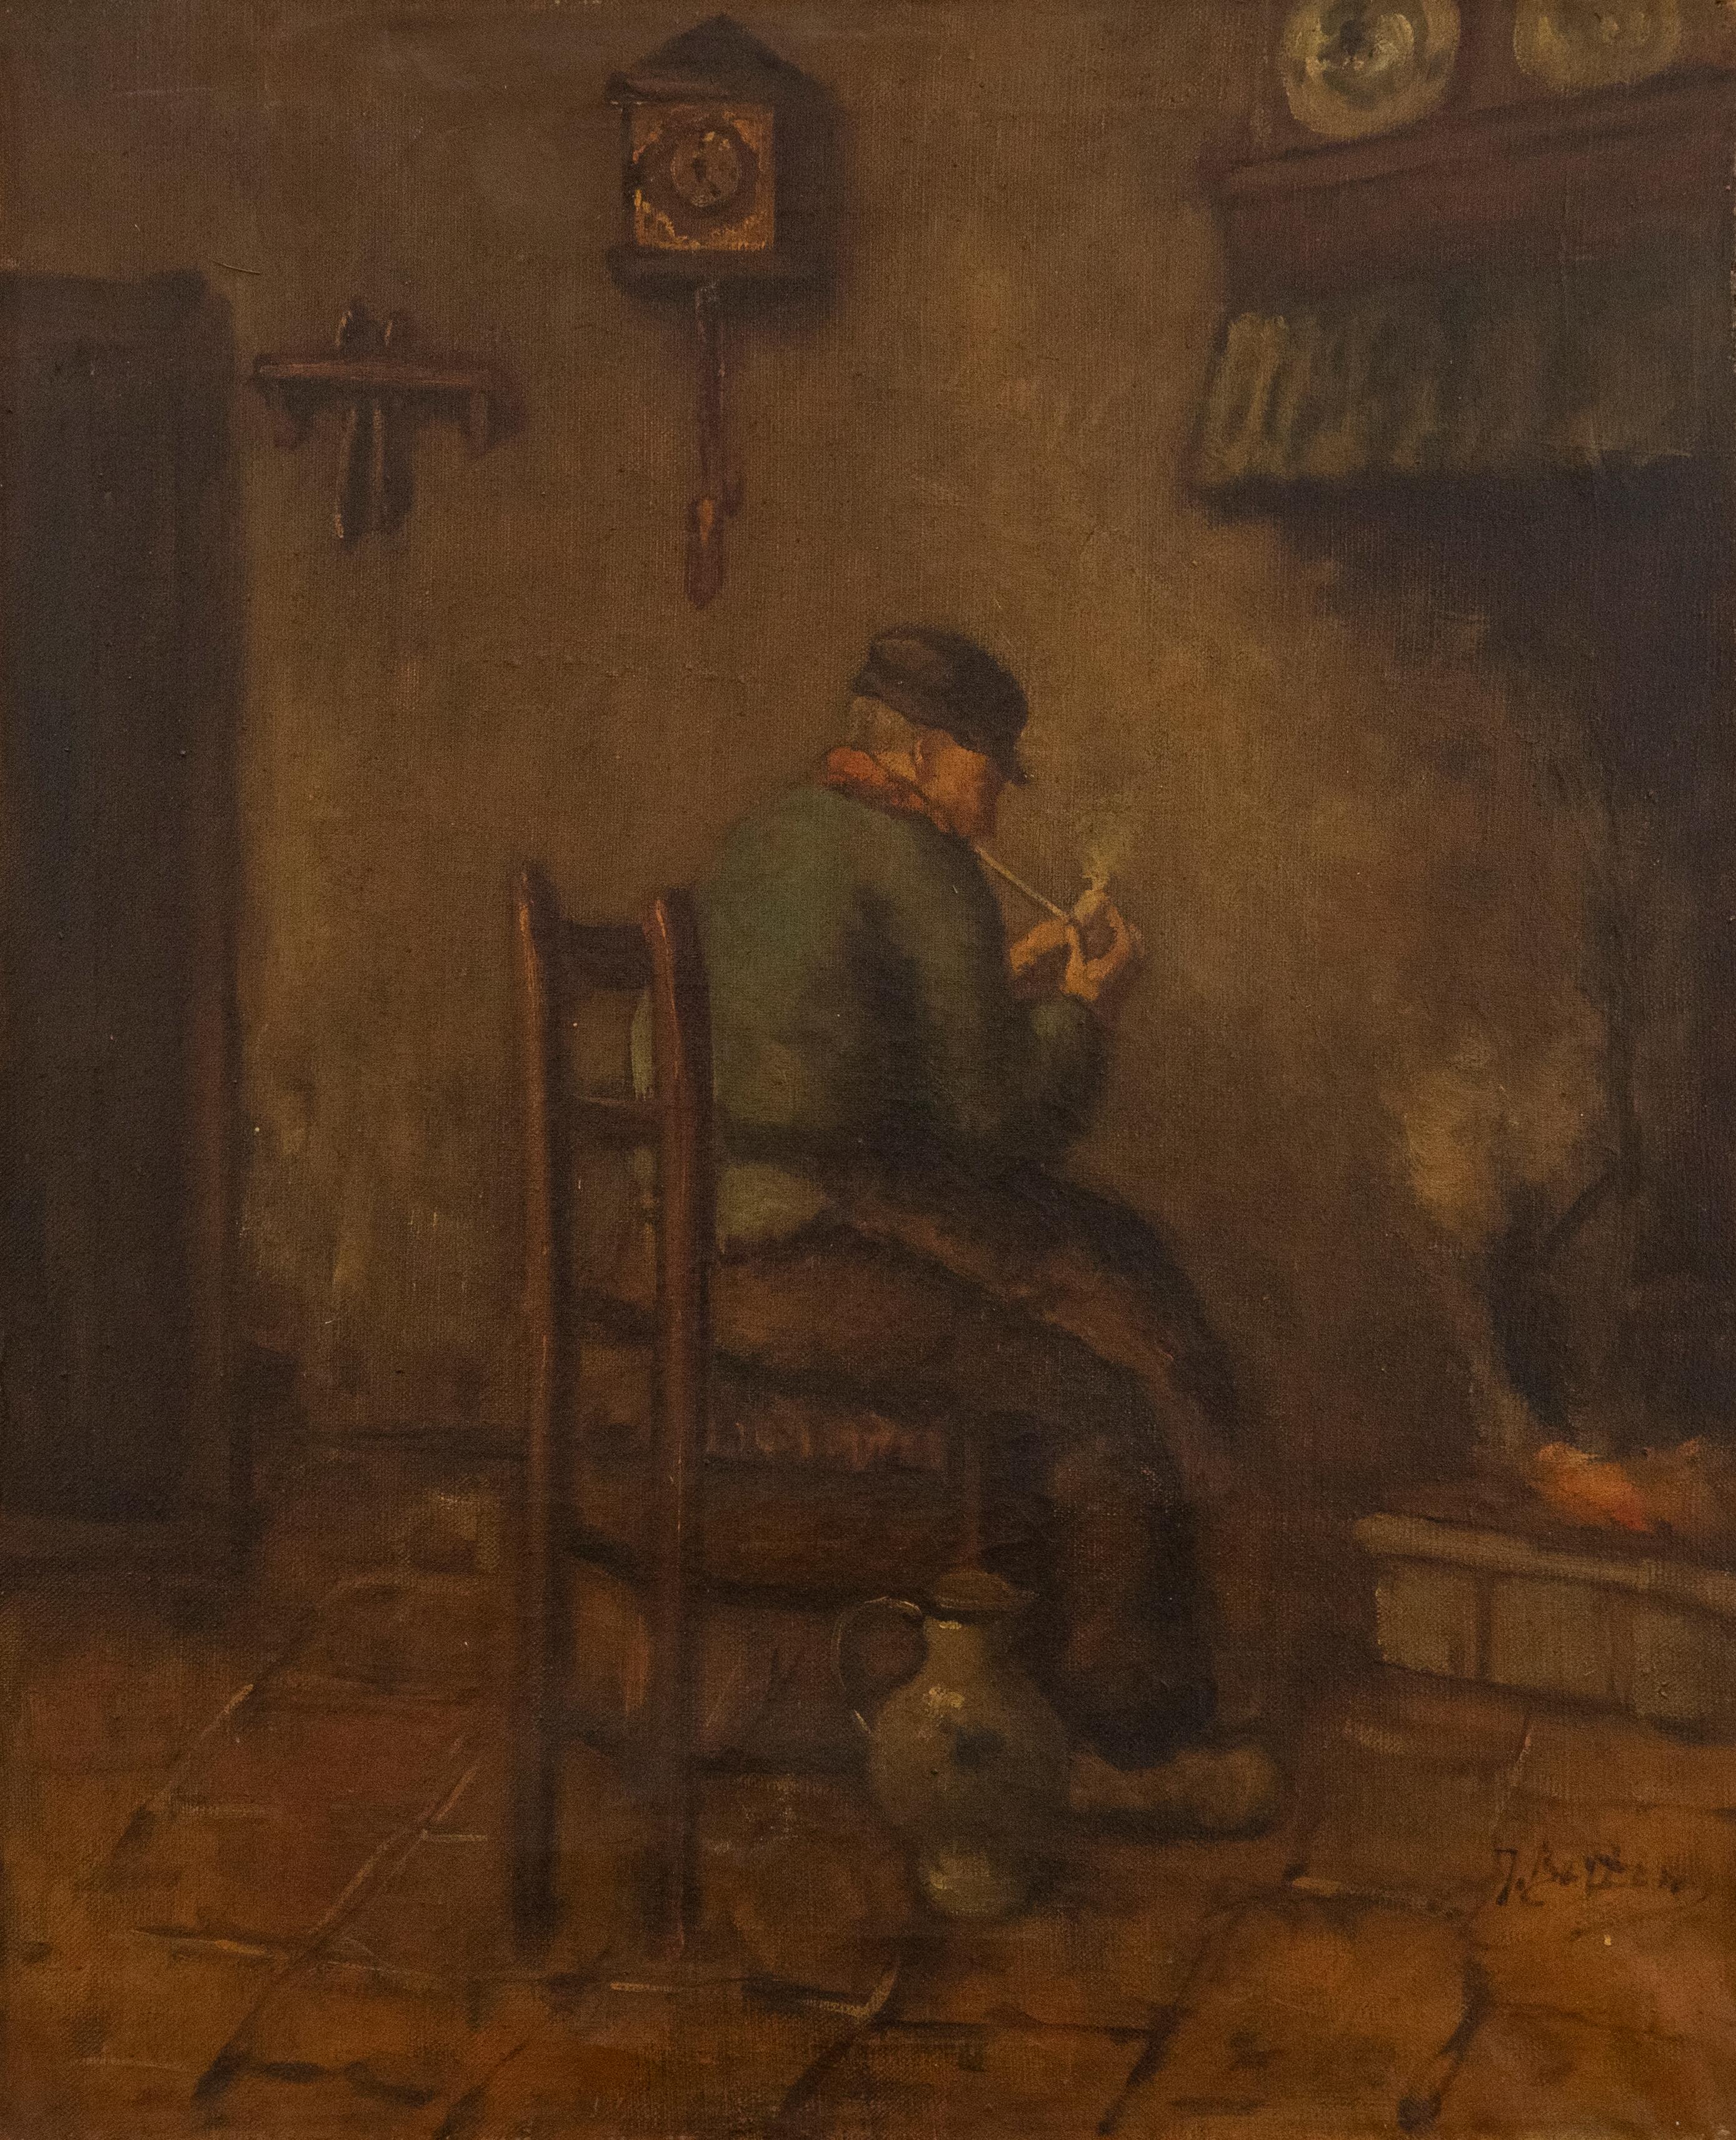 Eine charmante Szene, die ein abgedunkeltes Interieur zeigt, in dem ein Mann auf einem Holzstuhl vor dem Feuer sitzt. Er hält sich eine angezündete Pfeife an den Mund und pafft den Rauch in den Raum. Der Stil ist typisch für die Interieurs der